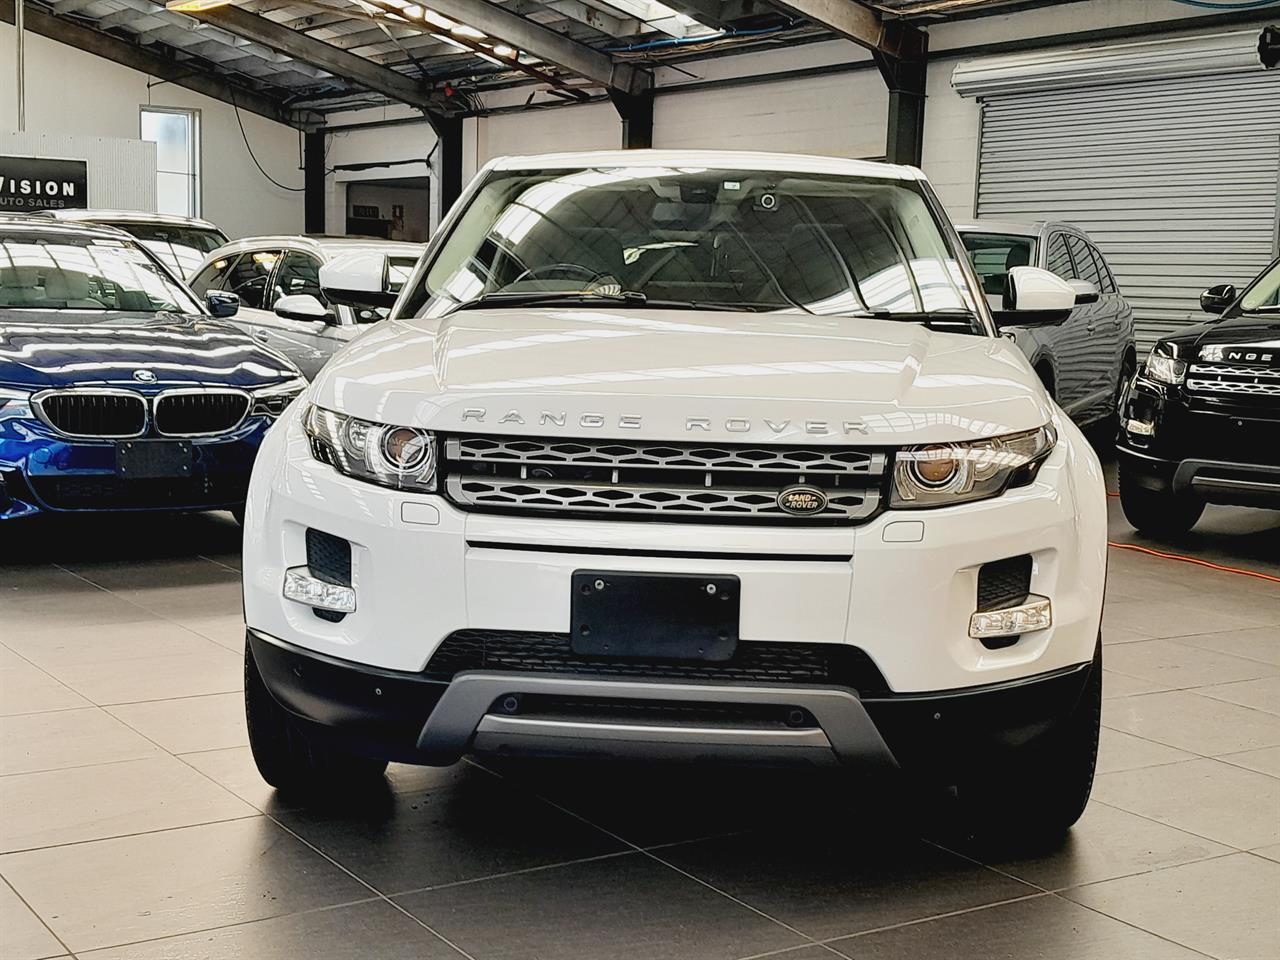 2014 Land Rover Range Rover Evoque